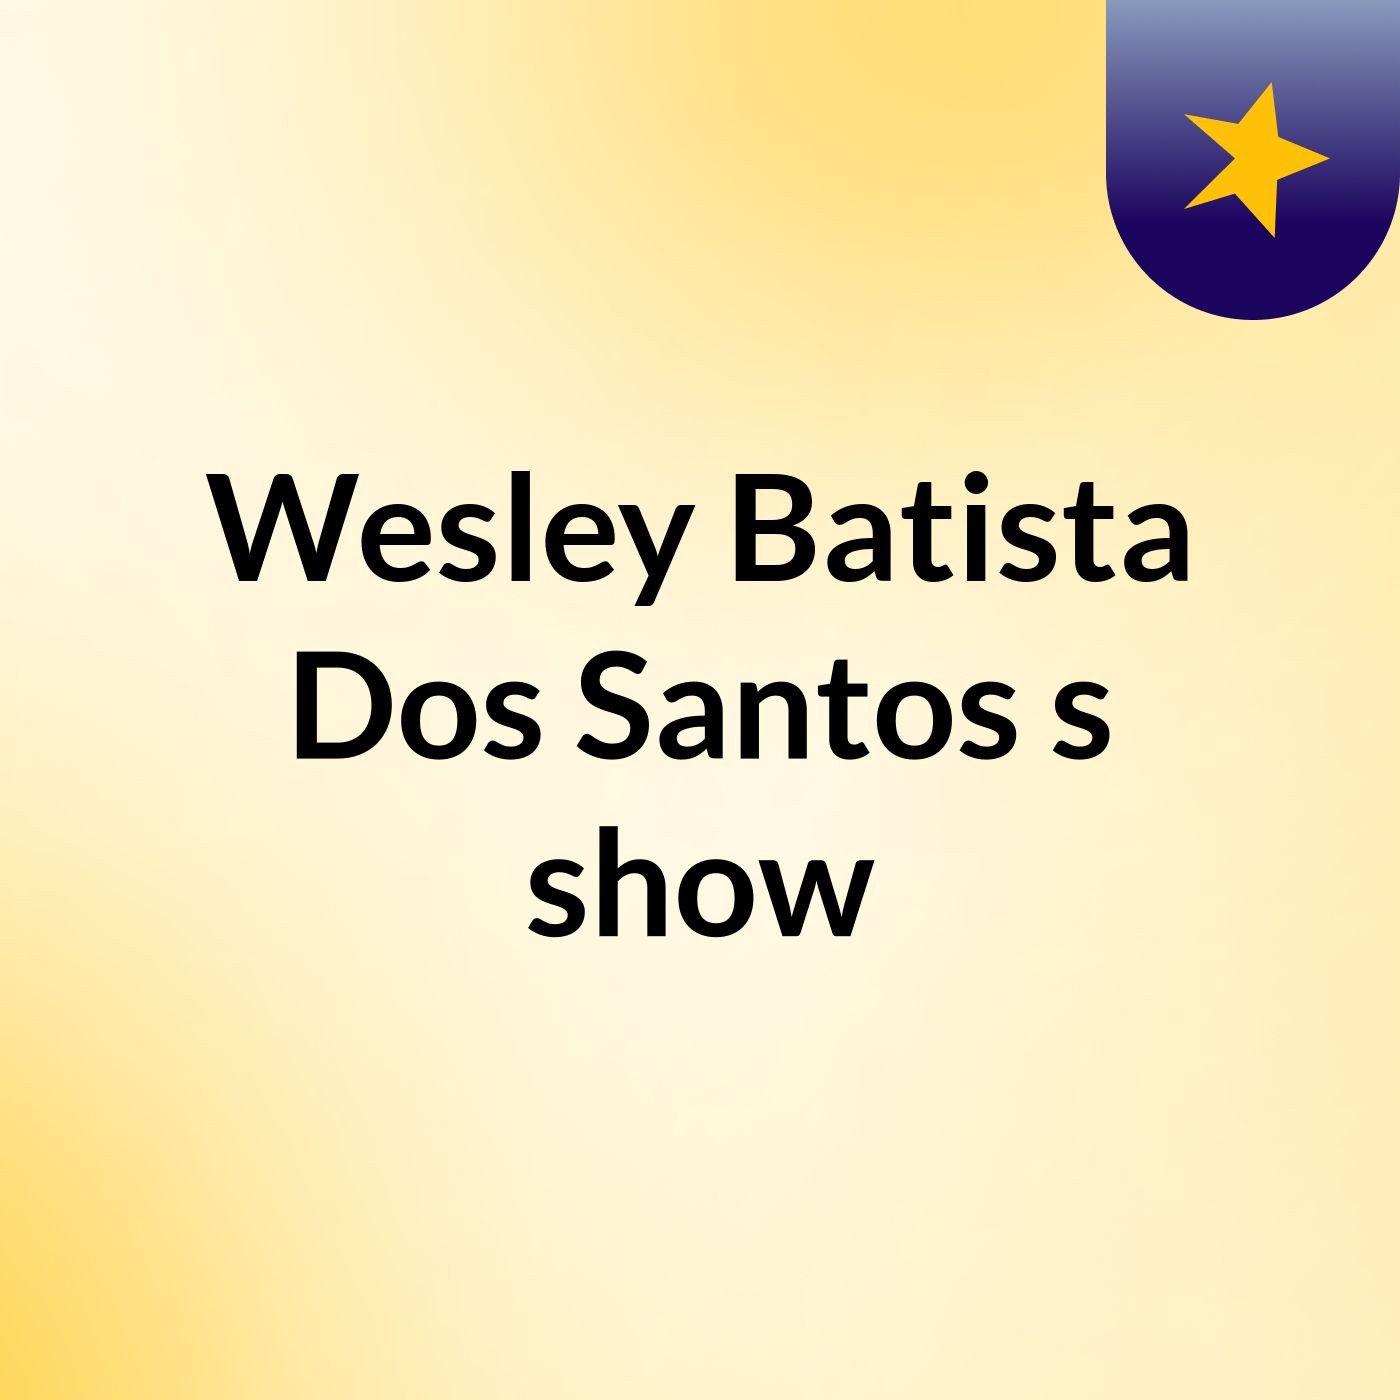 Episódio 19 - Wesley Batista Dos Santos's show